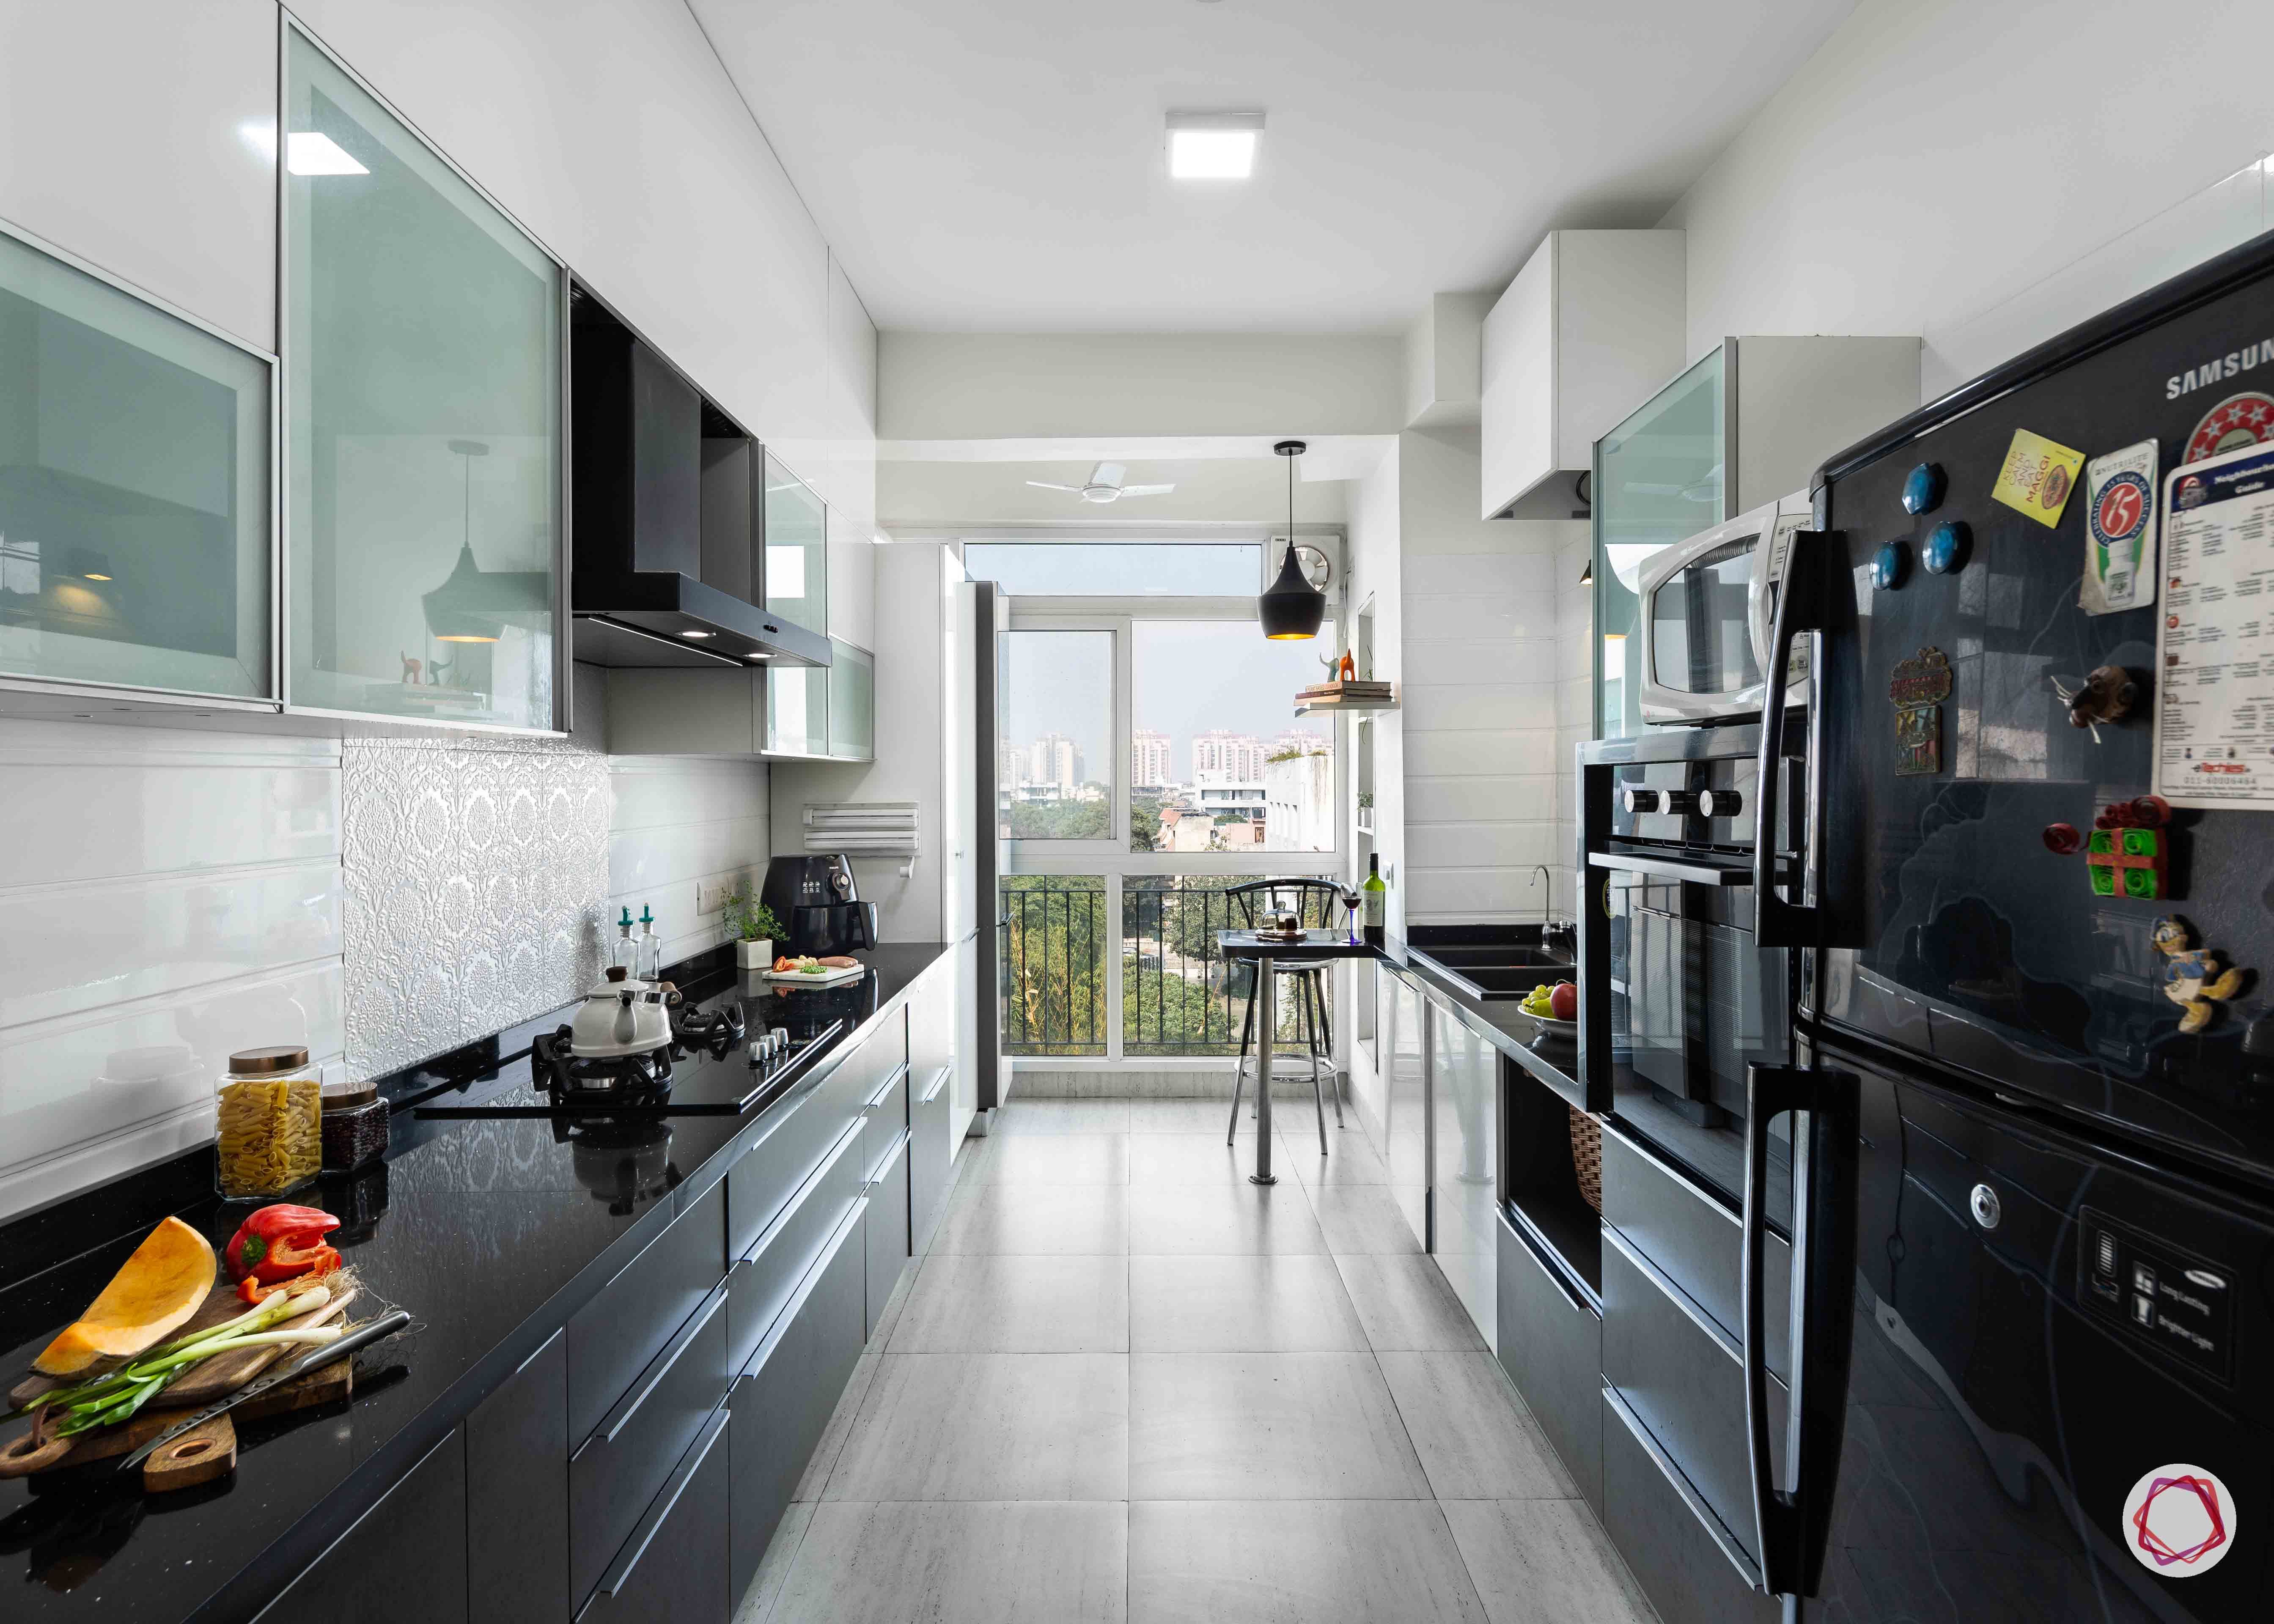 Modern kitchen design_full kitchen view